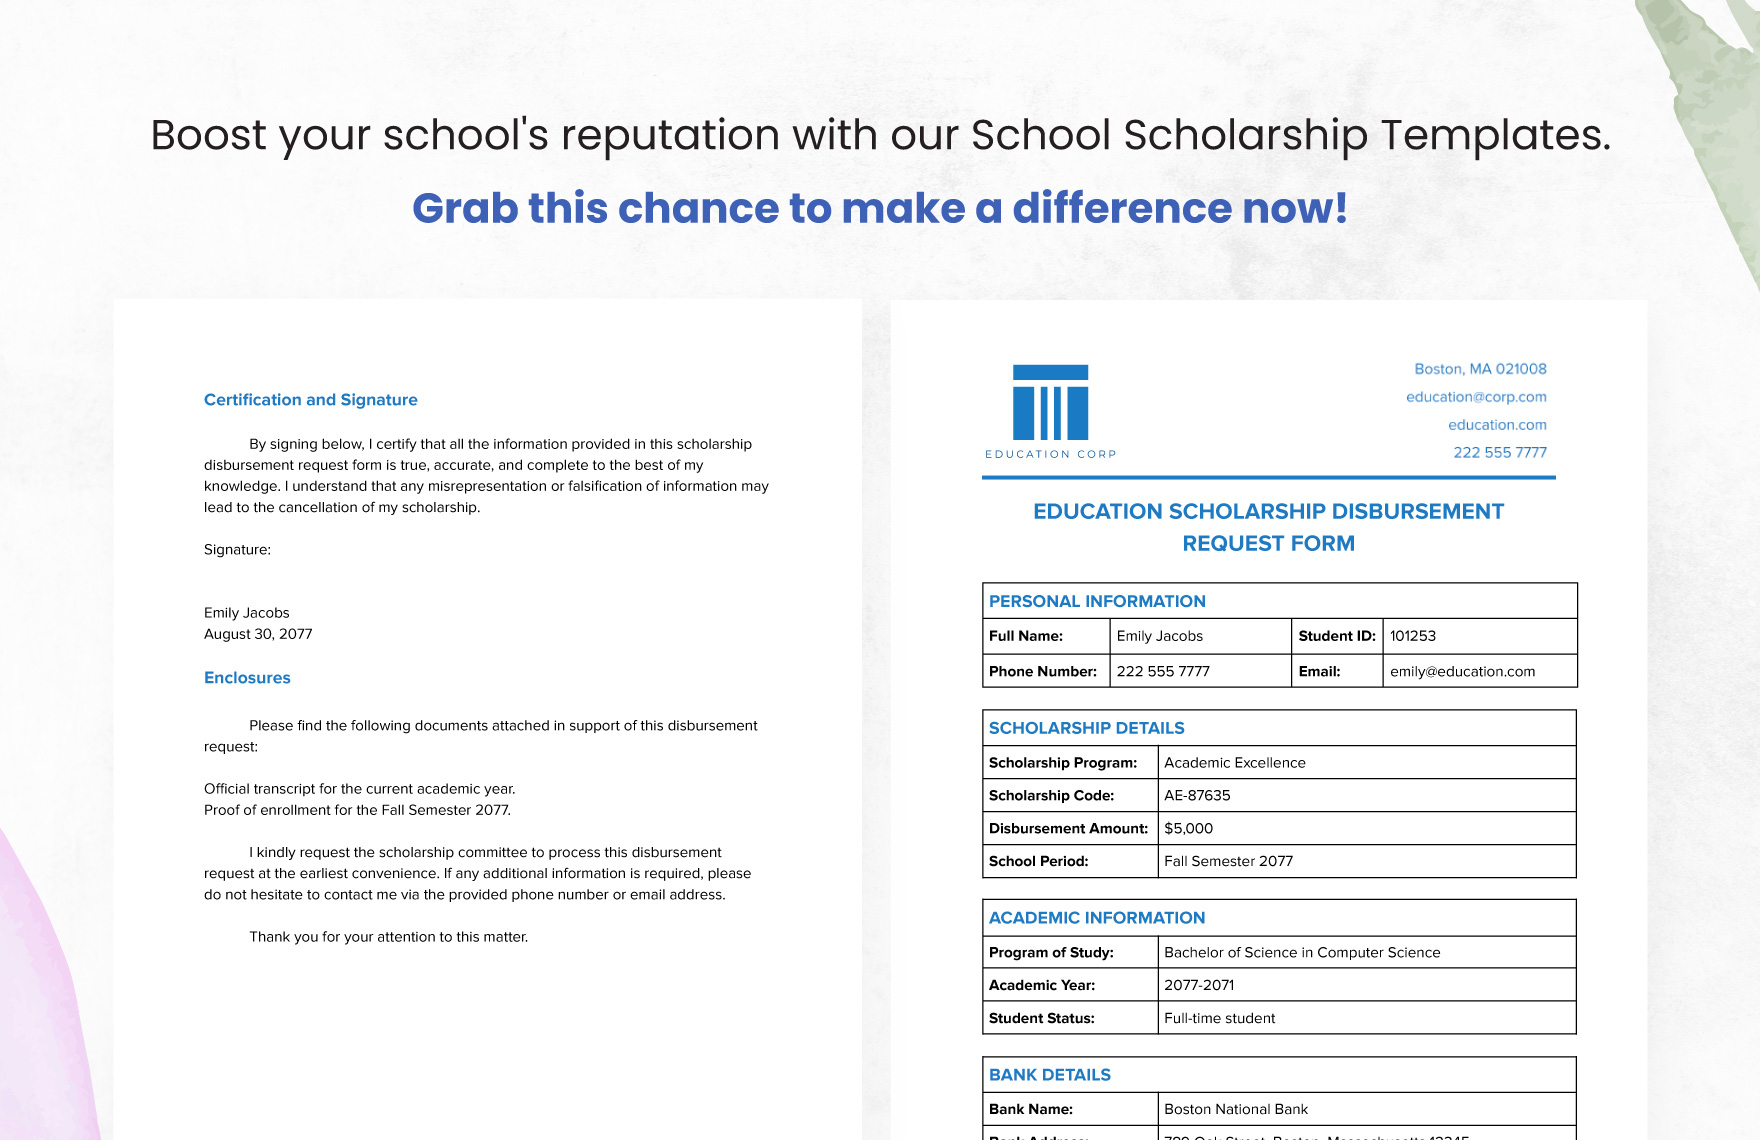 Education Scholarship Disbursement Request Form Template